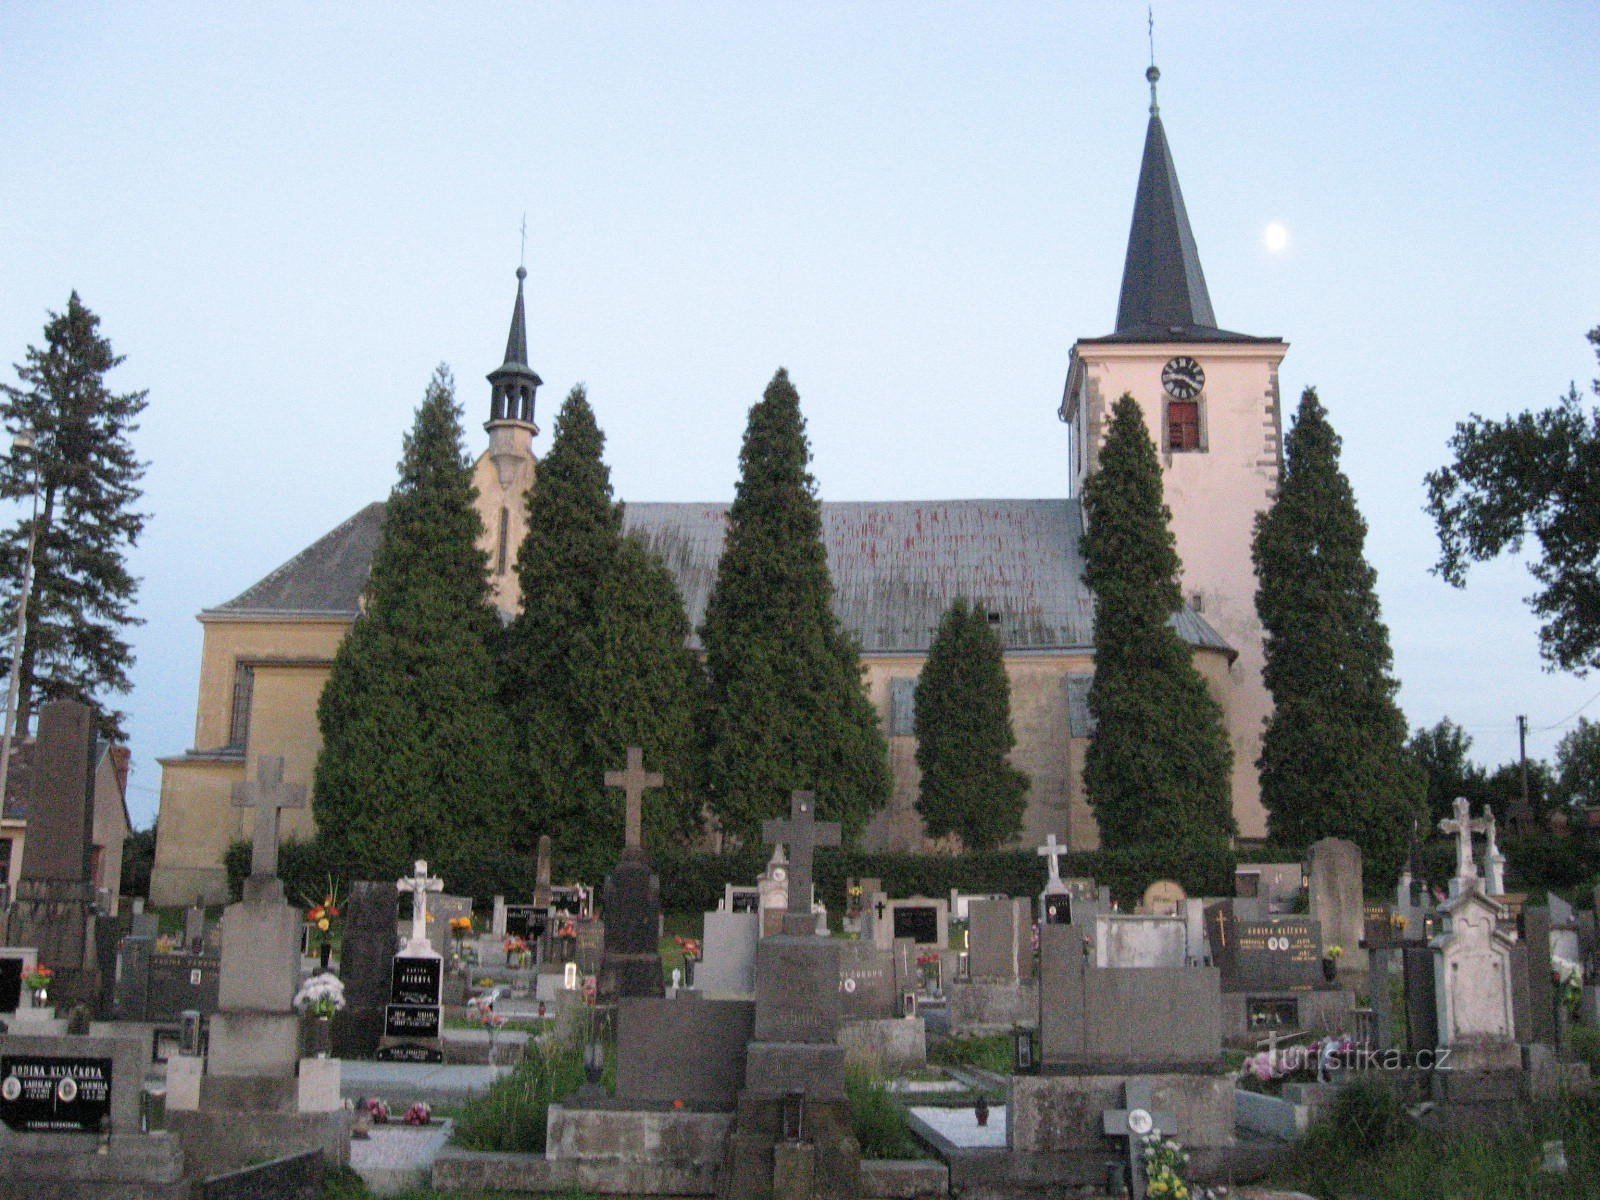 墓地と聖教会。 KunčínのJiří